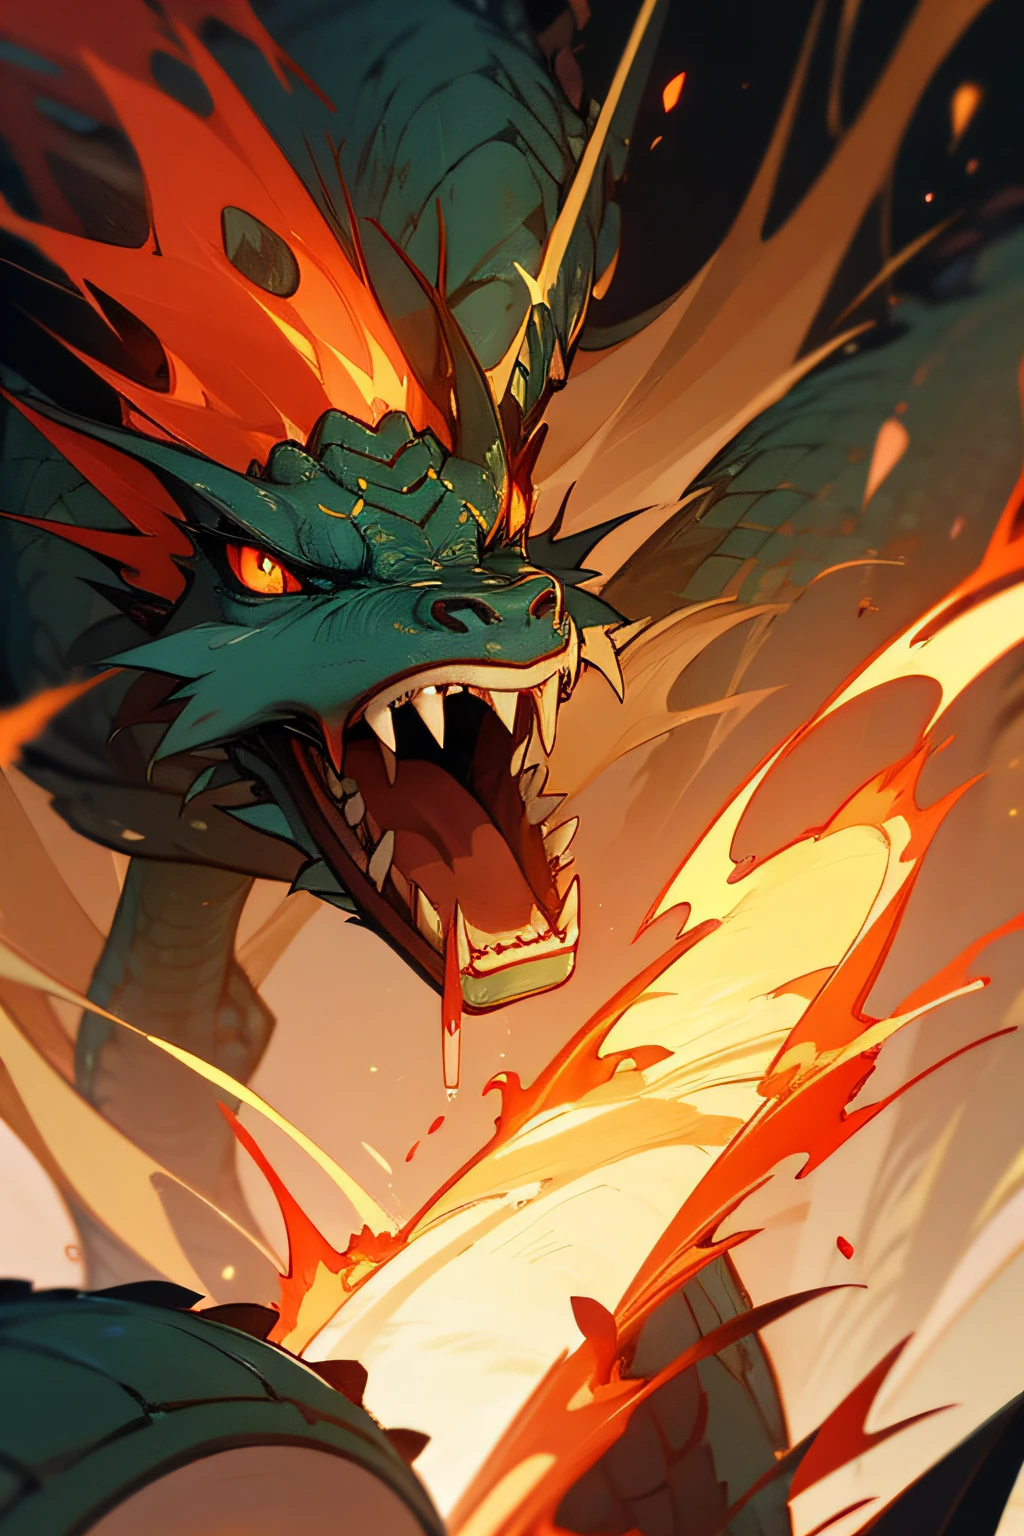 ALTOS DETALHES Estilo chinês，mitologia chinesa, o grande dragão descendo do céu, sua boca ardendo com fogo,